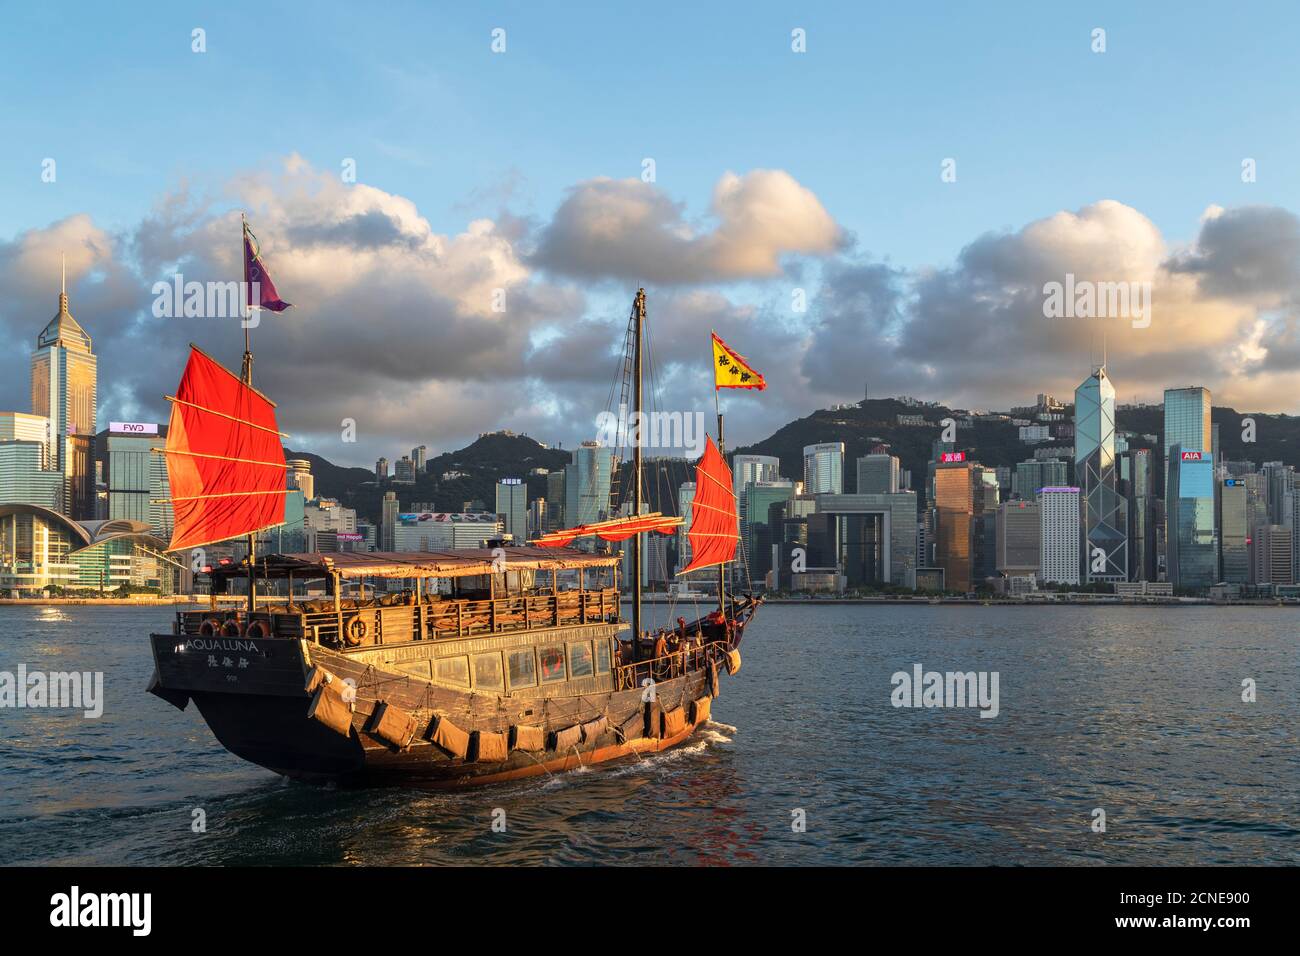 Junk boat and skyline of Hong Kong Island, Hong Kong, China, Asia Stock Photo